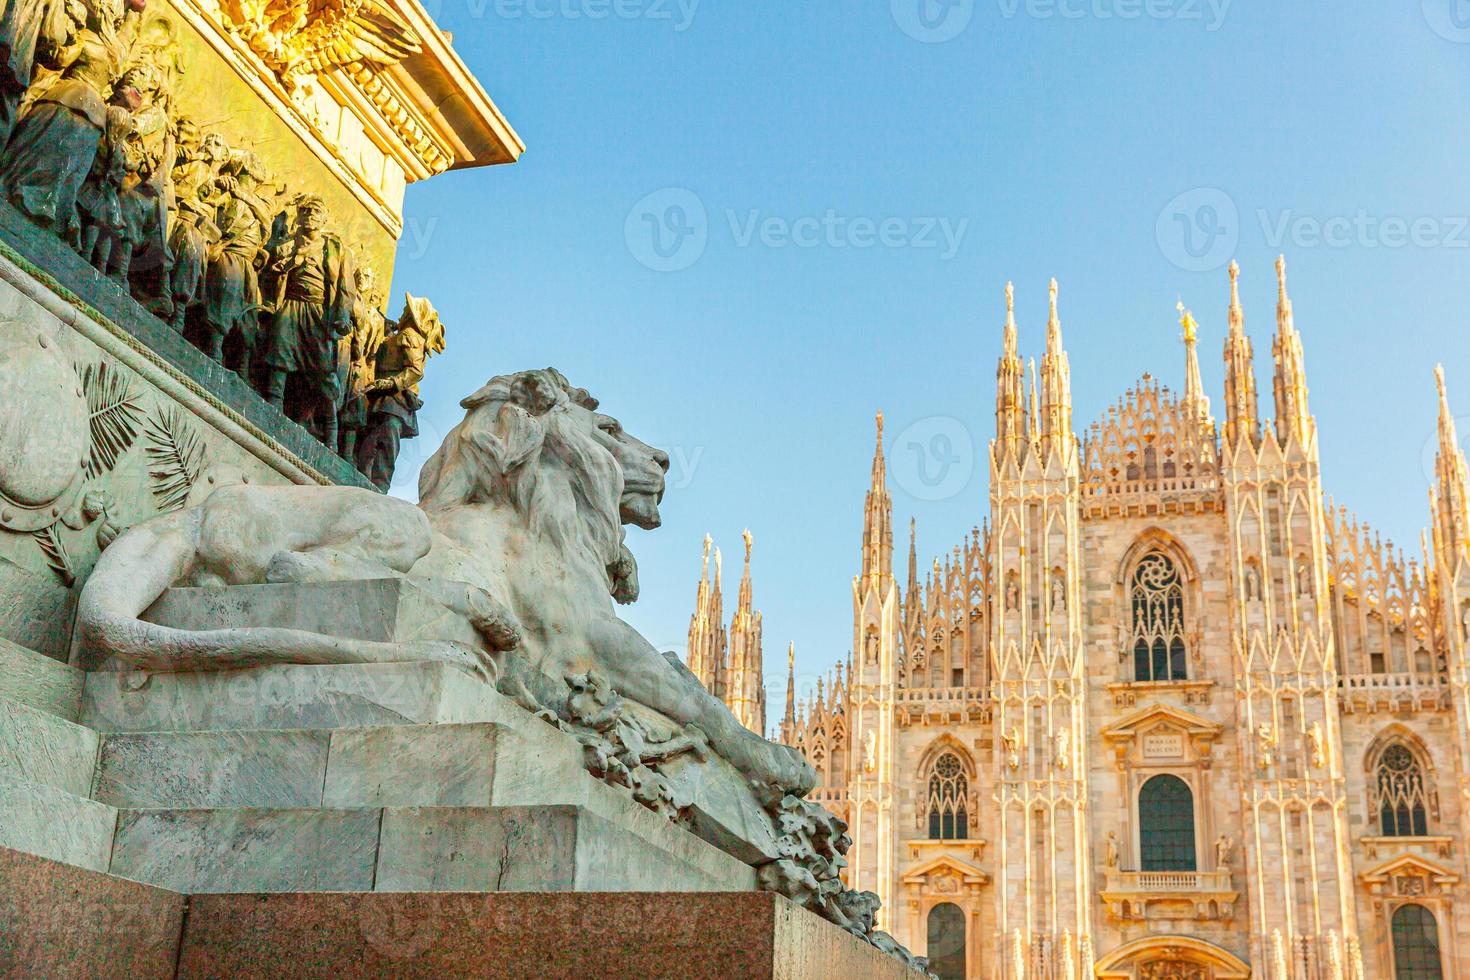 leeuw marmeren standbeeld in de buurt van de beroemde kathedraal van Milaan Duomo di Milano. panoramisch uitzicht op de belangrijkste toeristische attractie op piazza in Milaan, Lombardije, Italië. brede hoekmening van oude gotische architectuur en kunst. foto